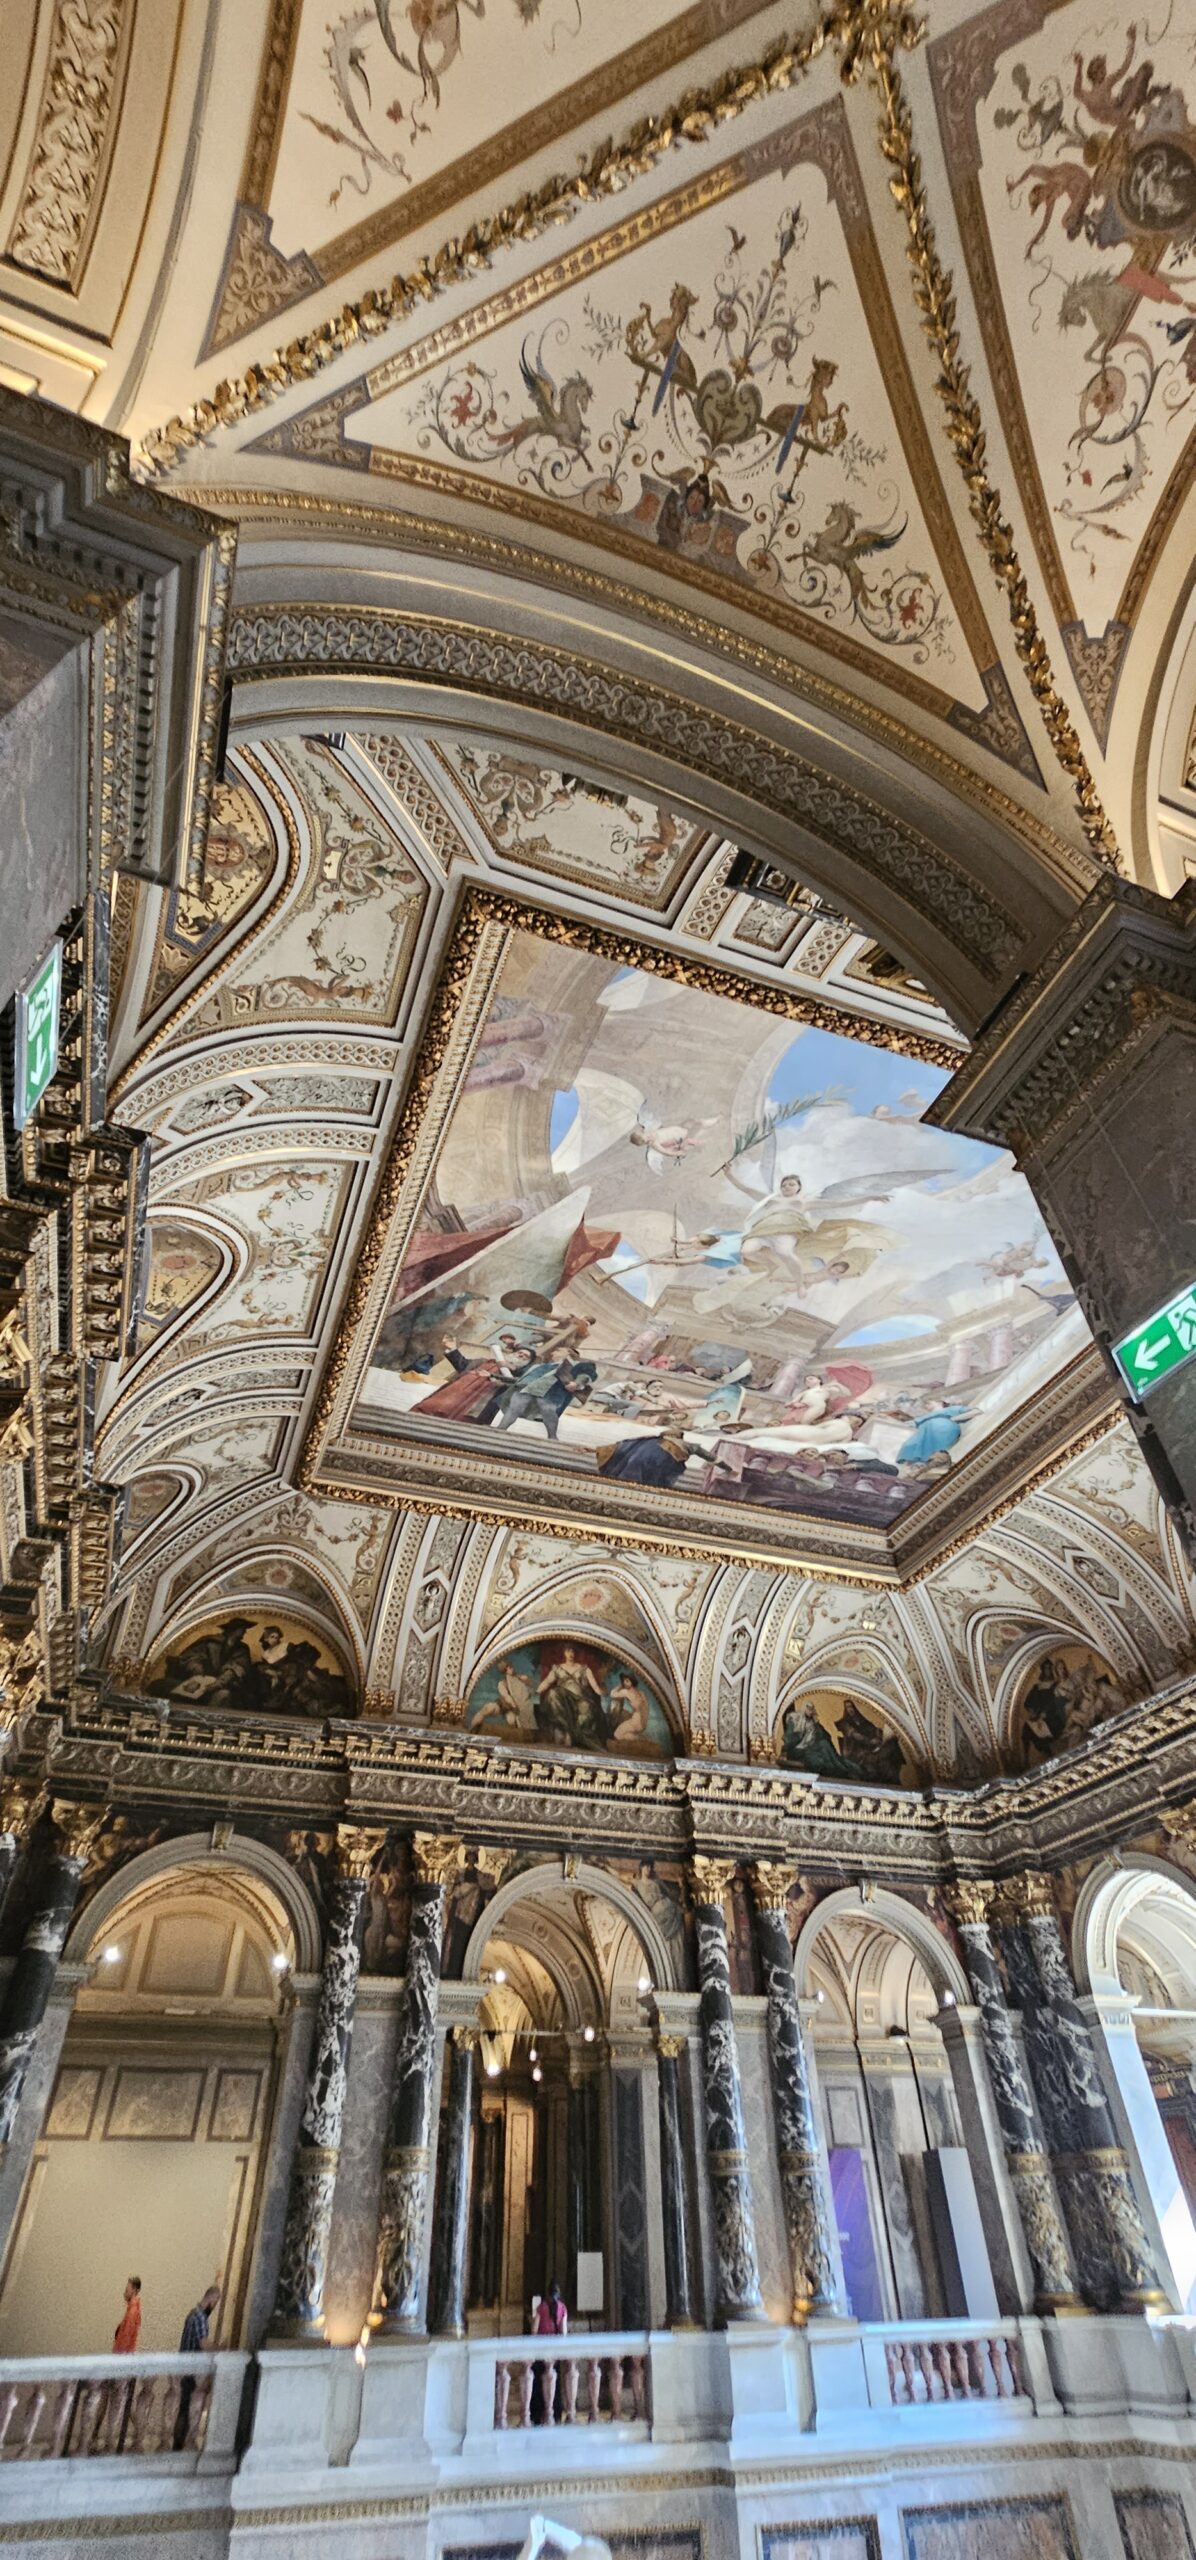 Ceiling of Upper Belvedere, Vienna